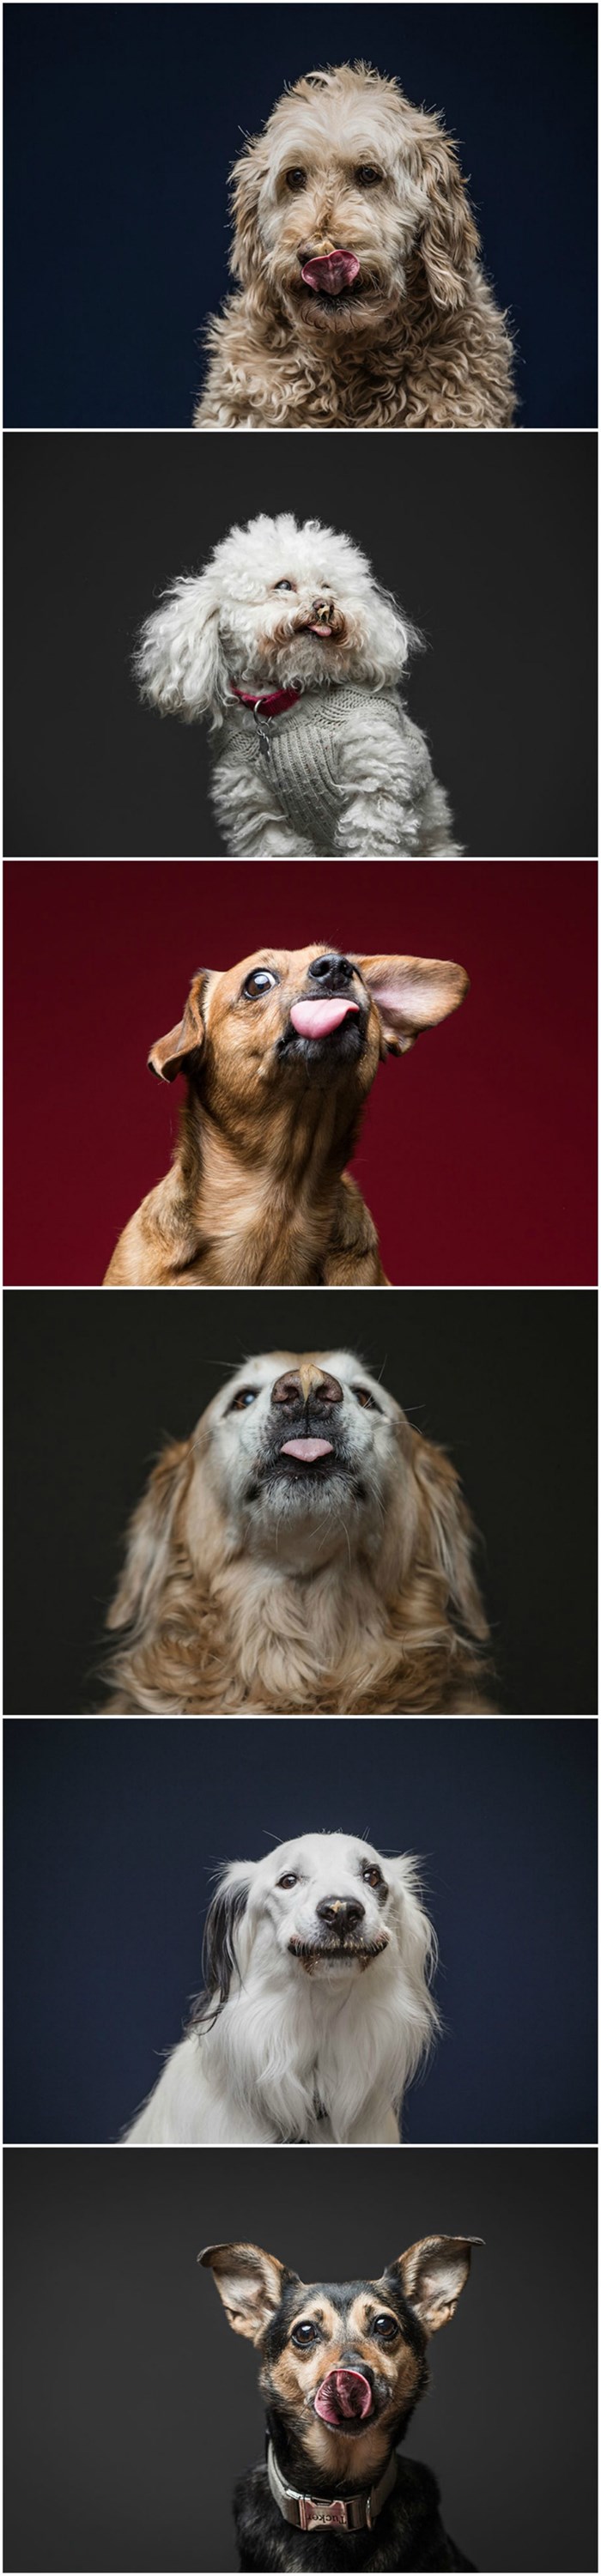 Zabavan projekt završio savršenim fotografijama - pasa i njihovih jezika